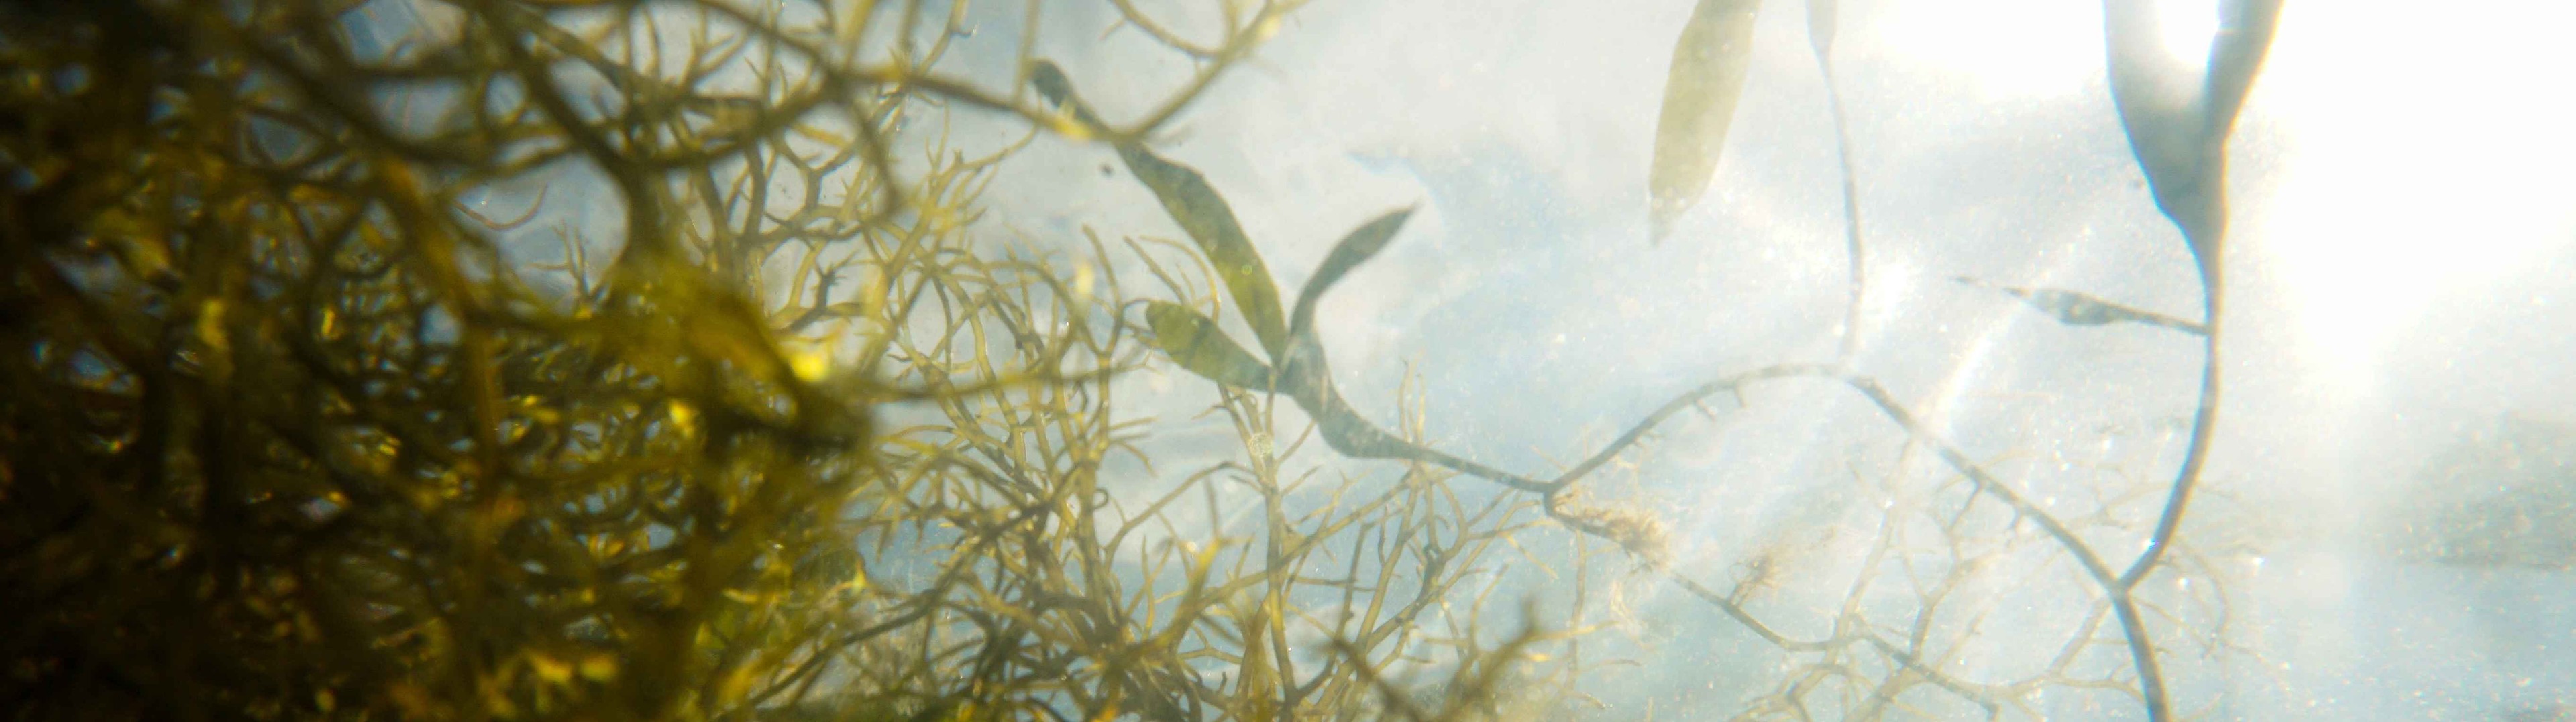 Crean microrobots basados en algas para combatir el cáncer